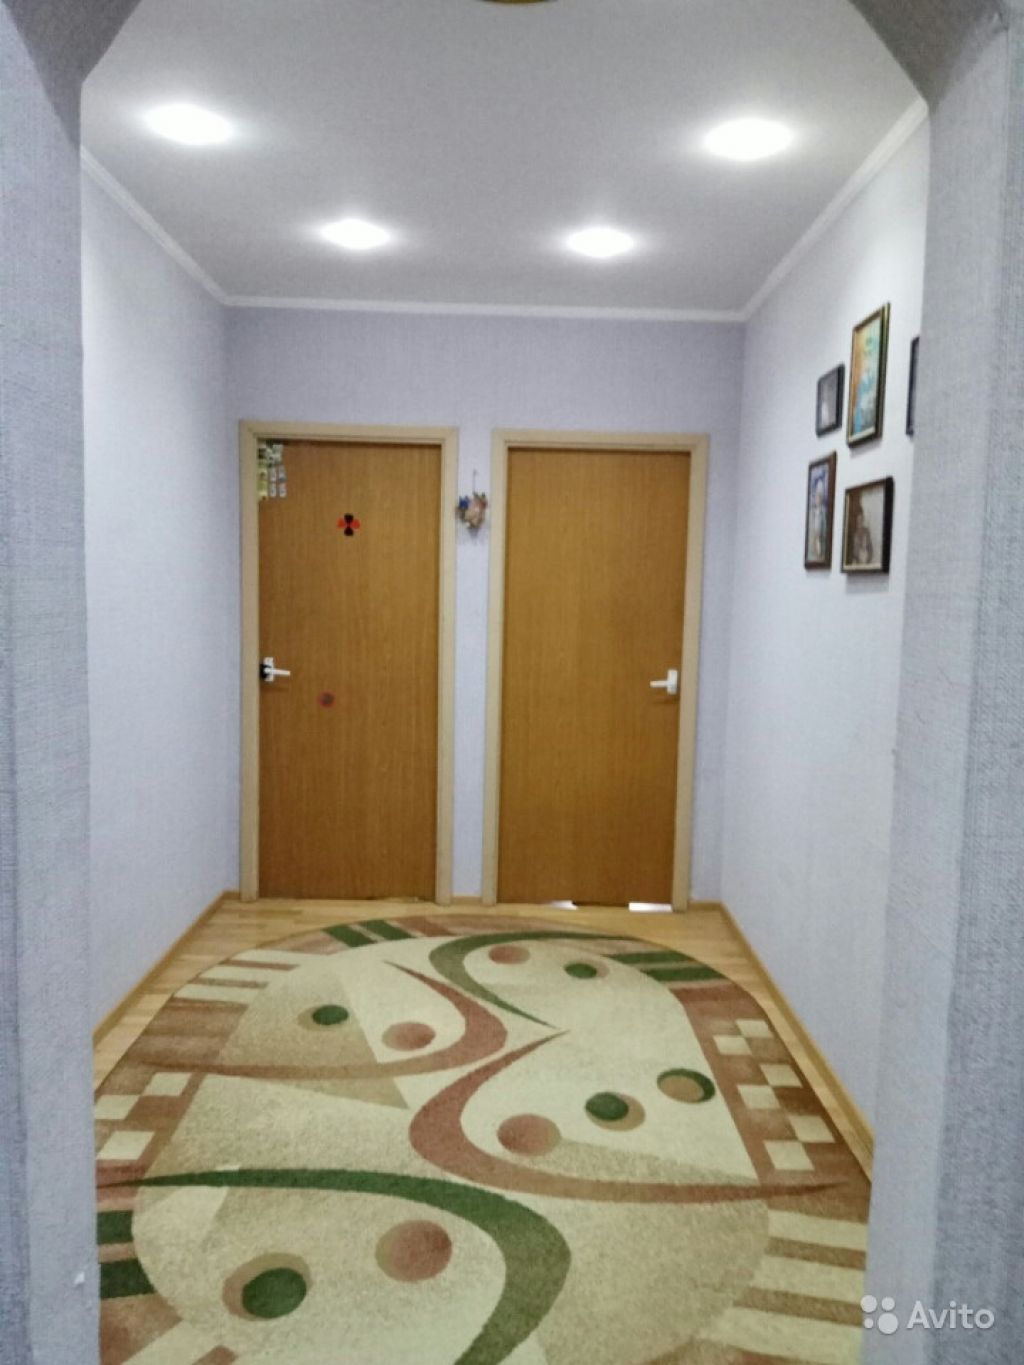 Сдам квартиру 2-к квартира 55 м² на 5 этаже 17-этажного панельного дома в Москве. Фото 1